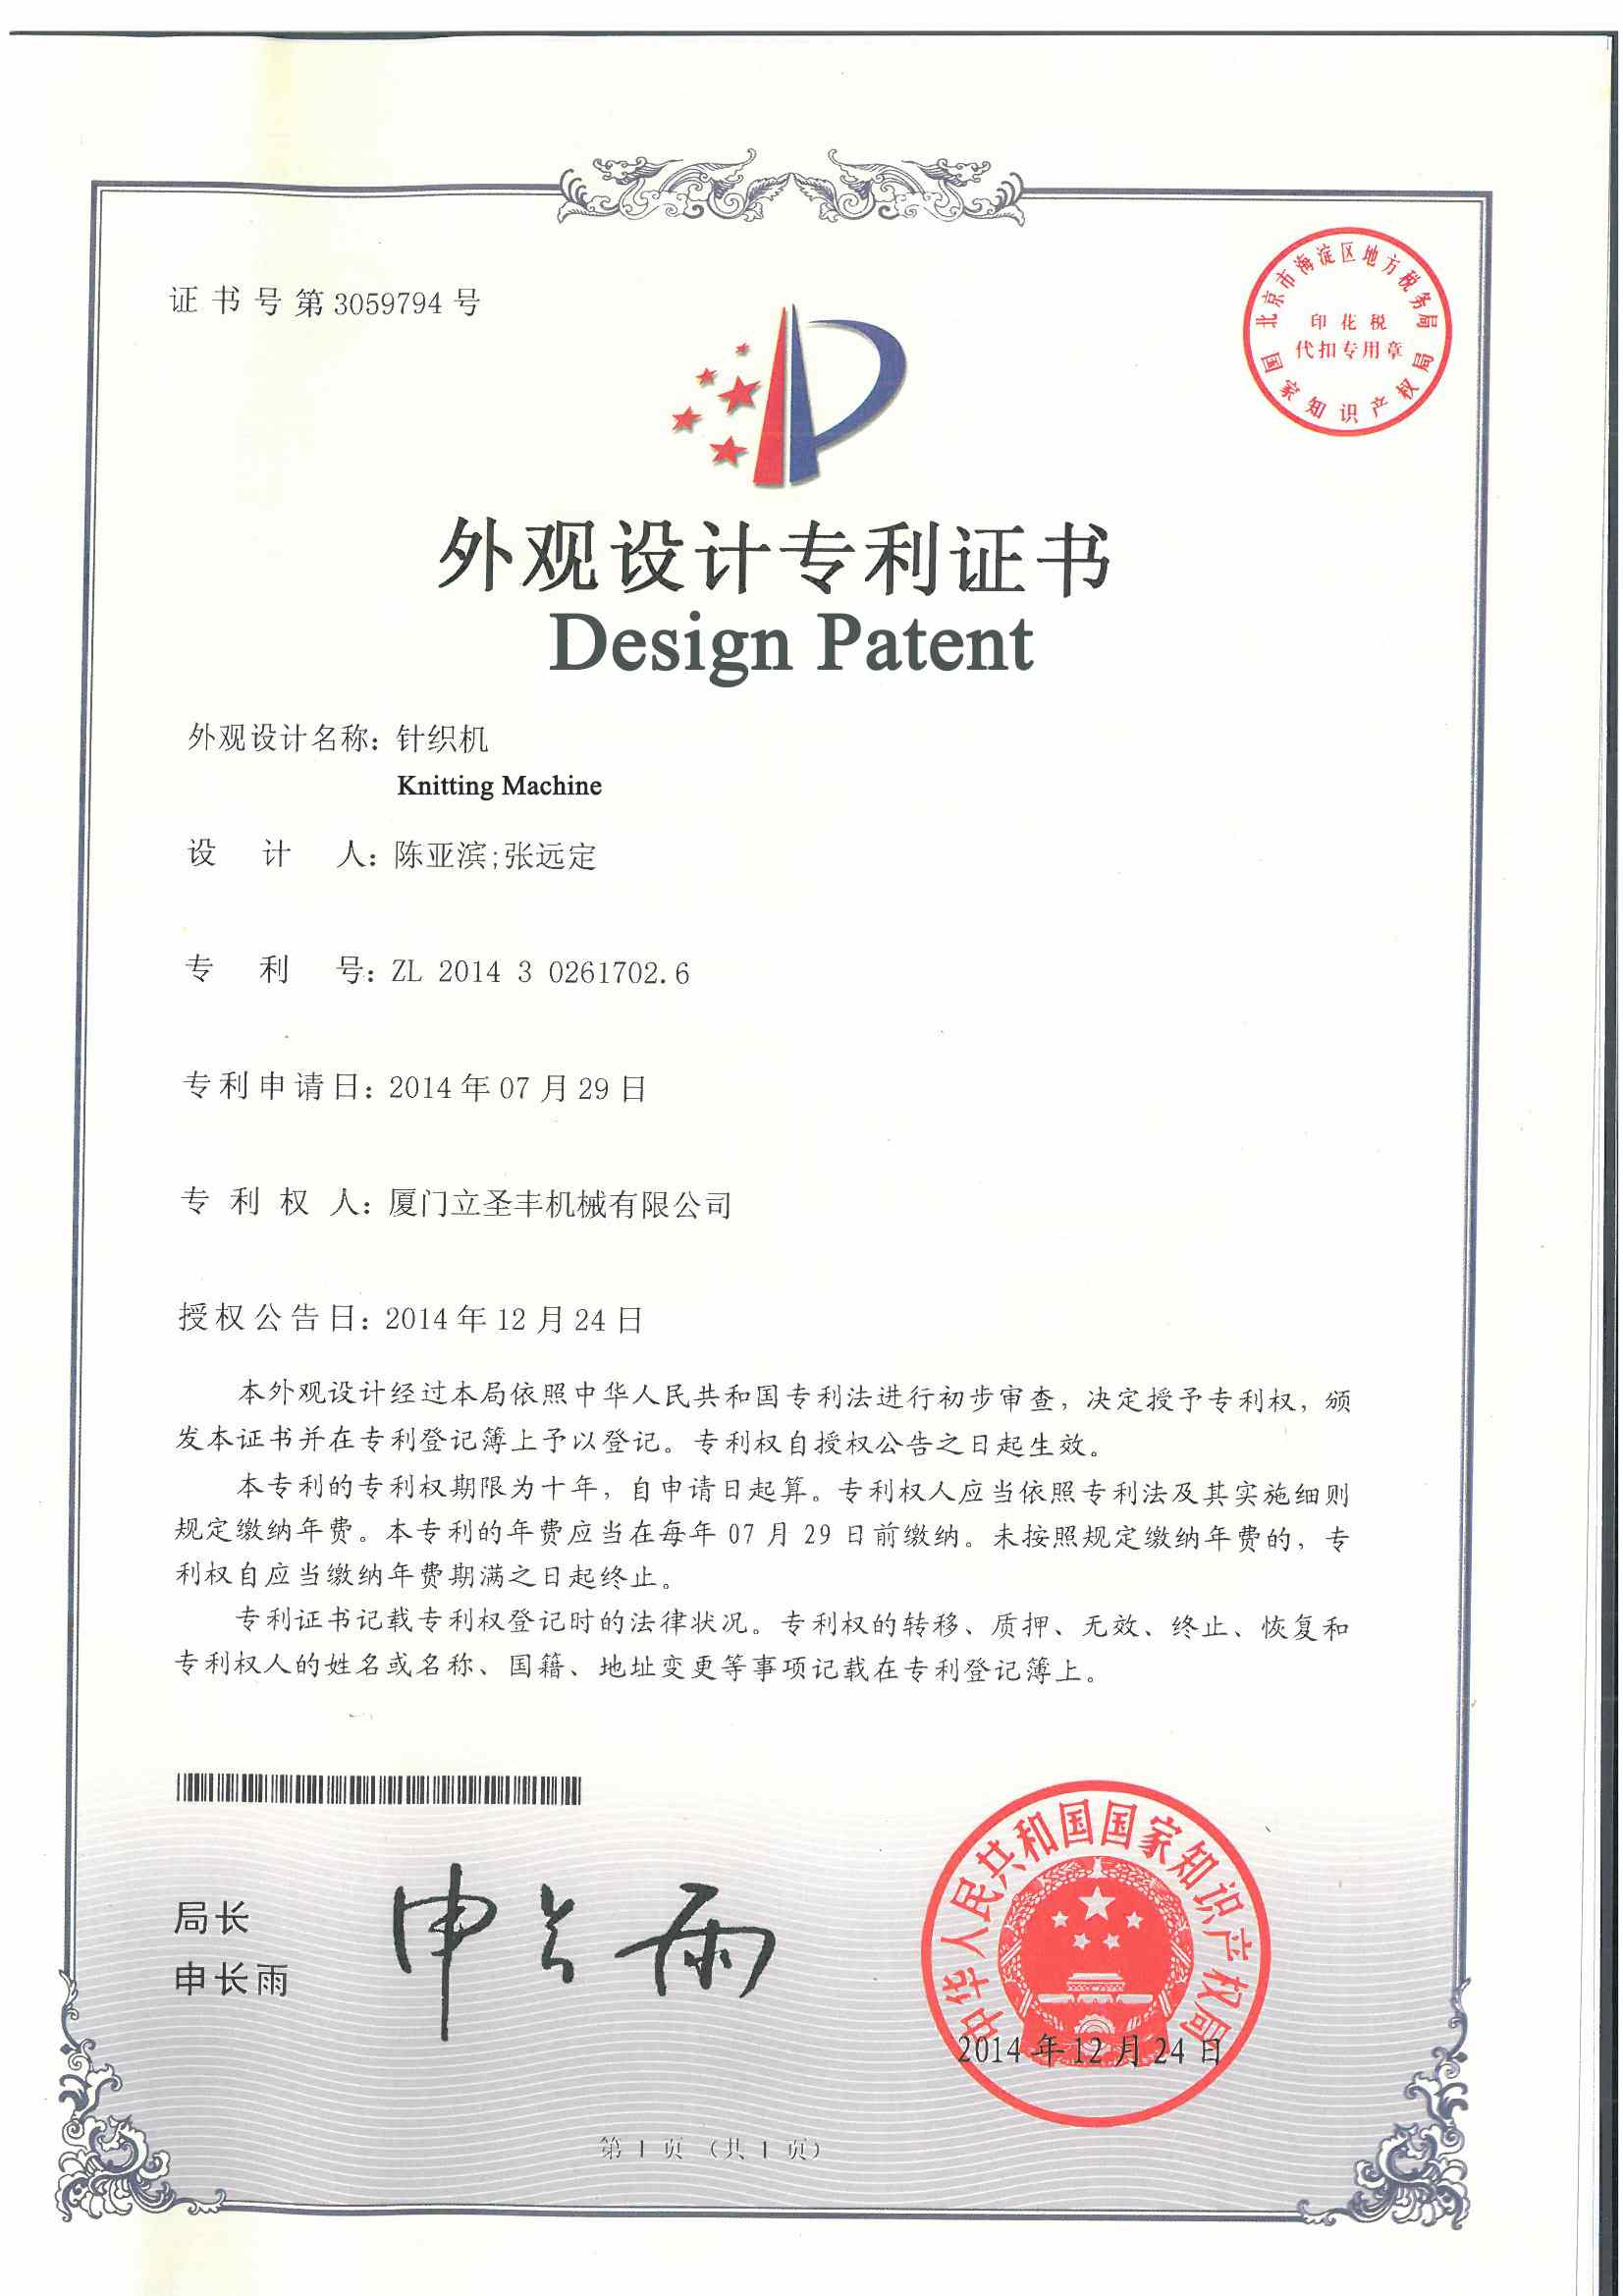 brevets
